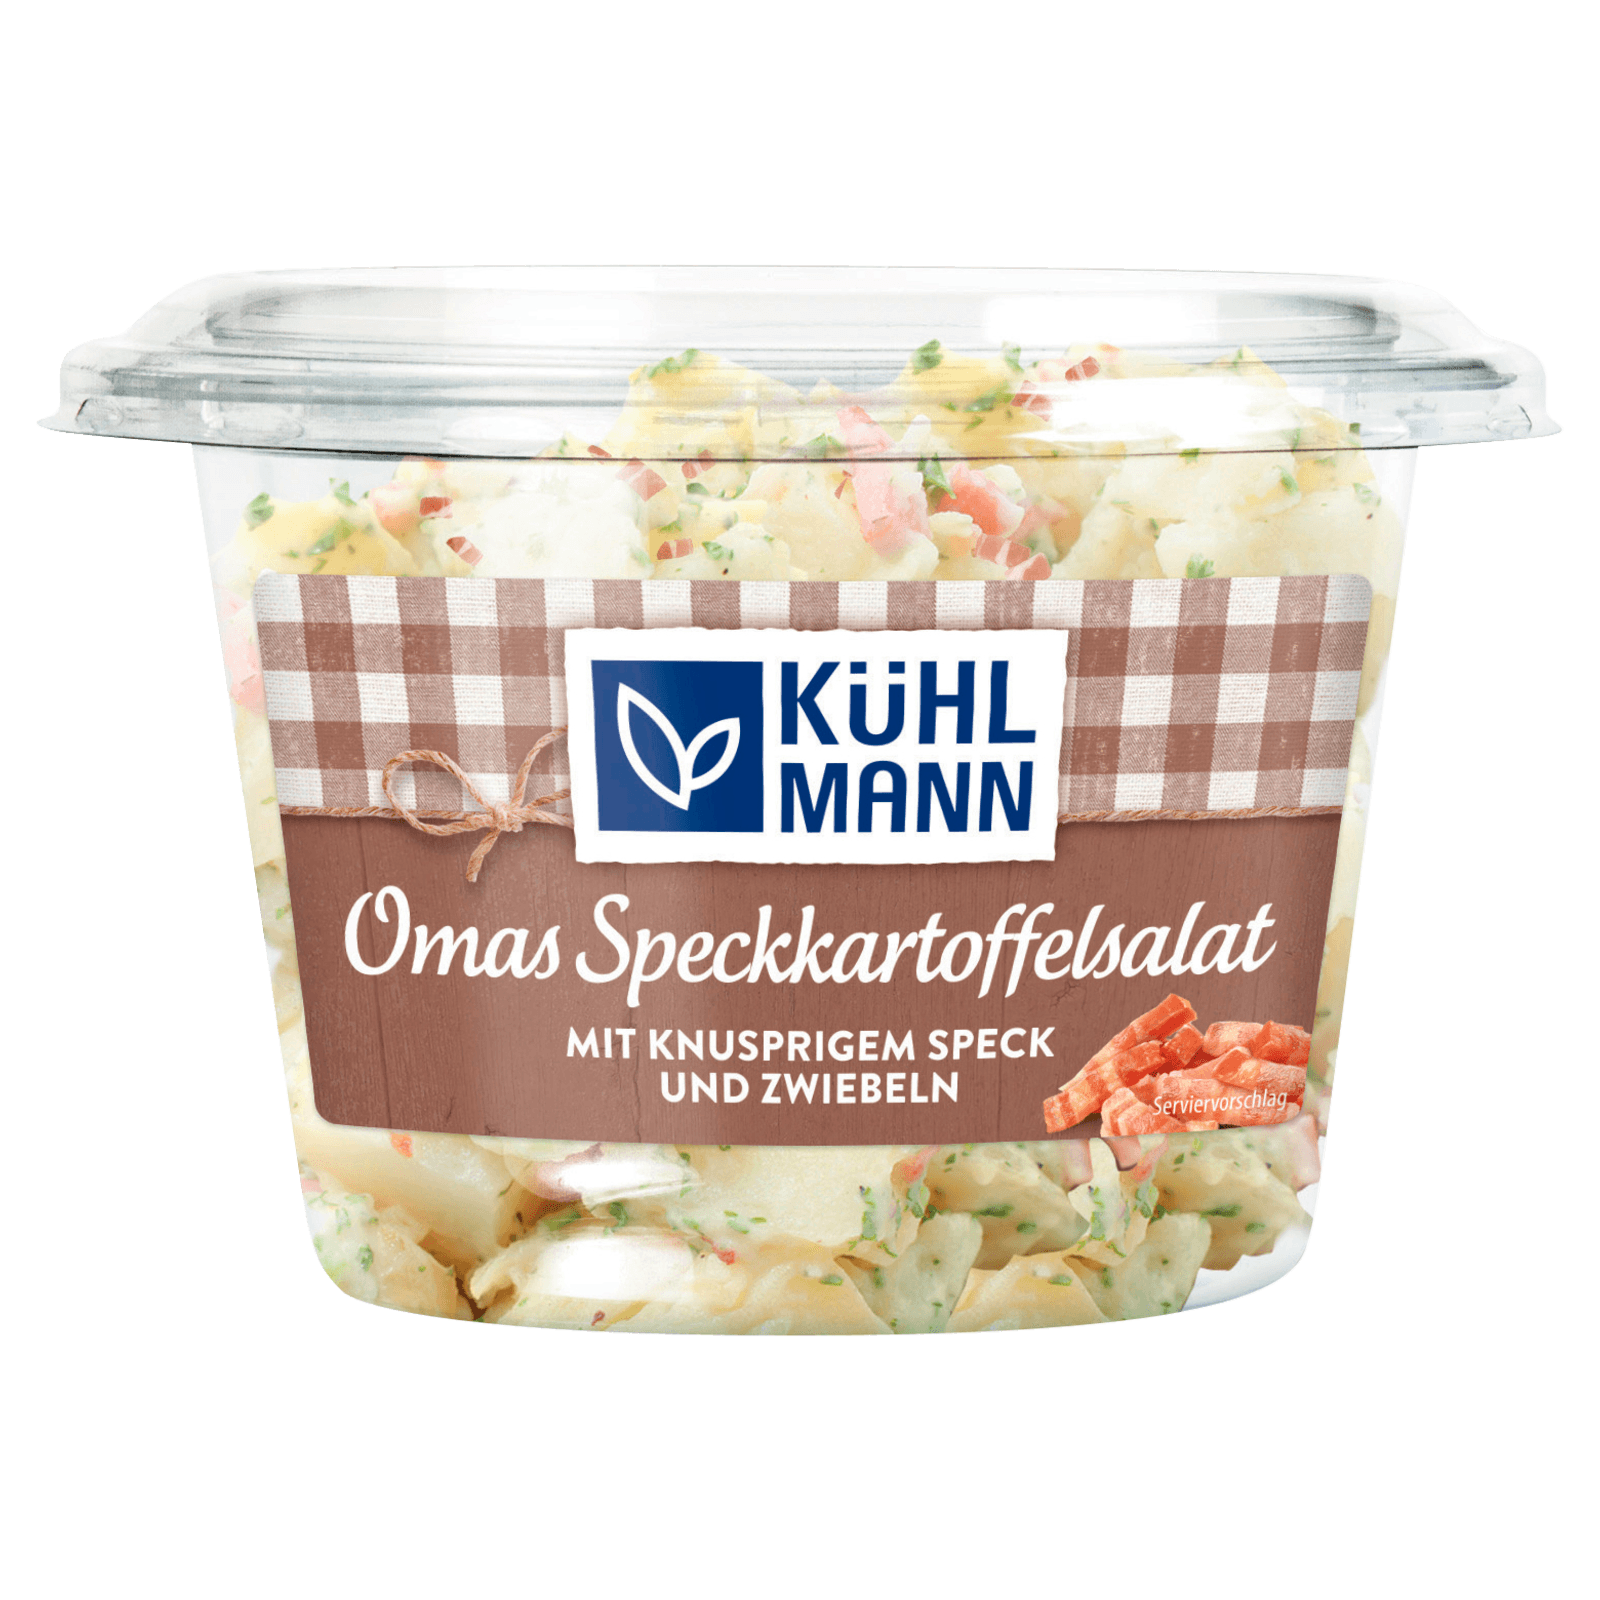 Kühlmann Speck-Kartoffelsalat 350g  für 2.49 EUR